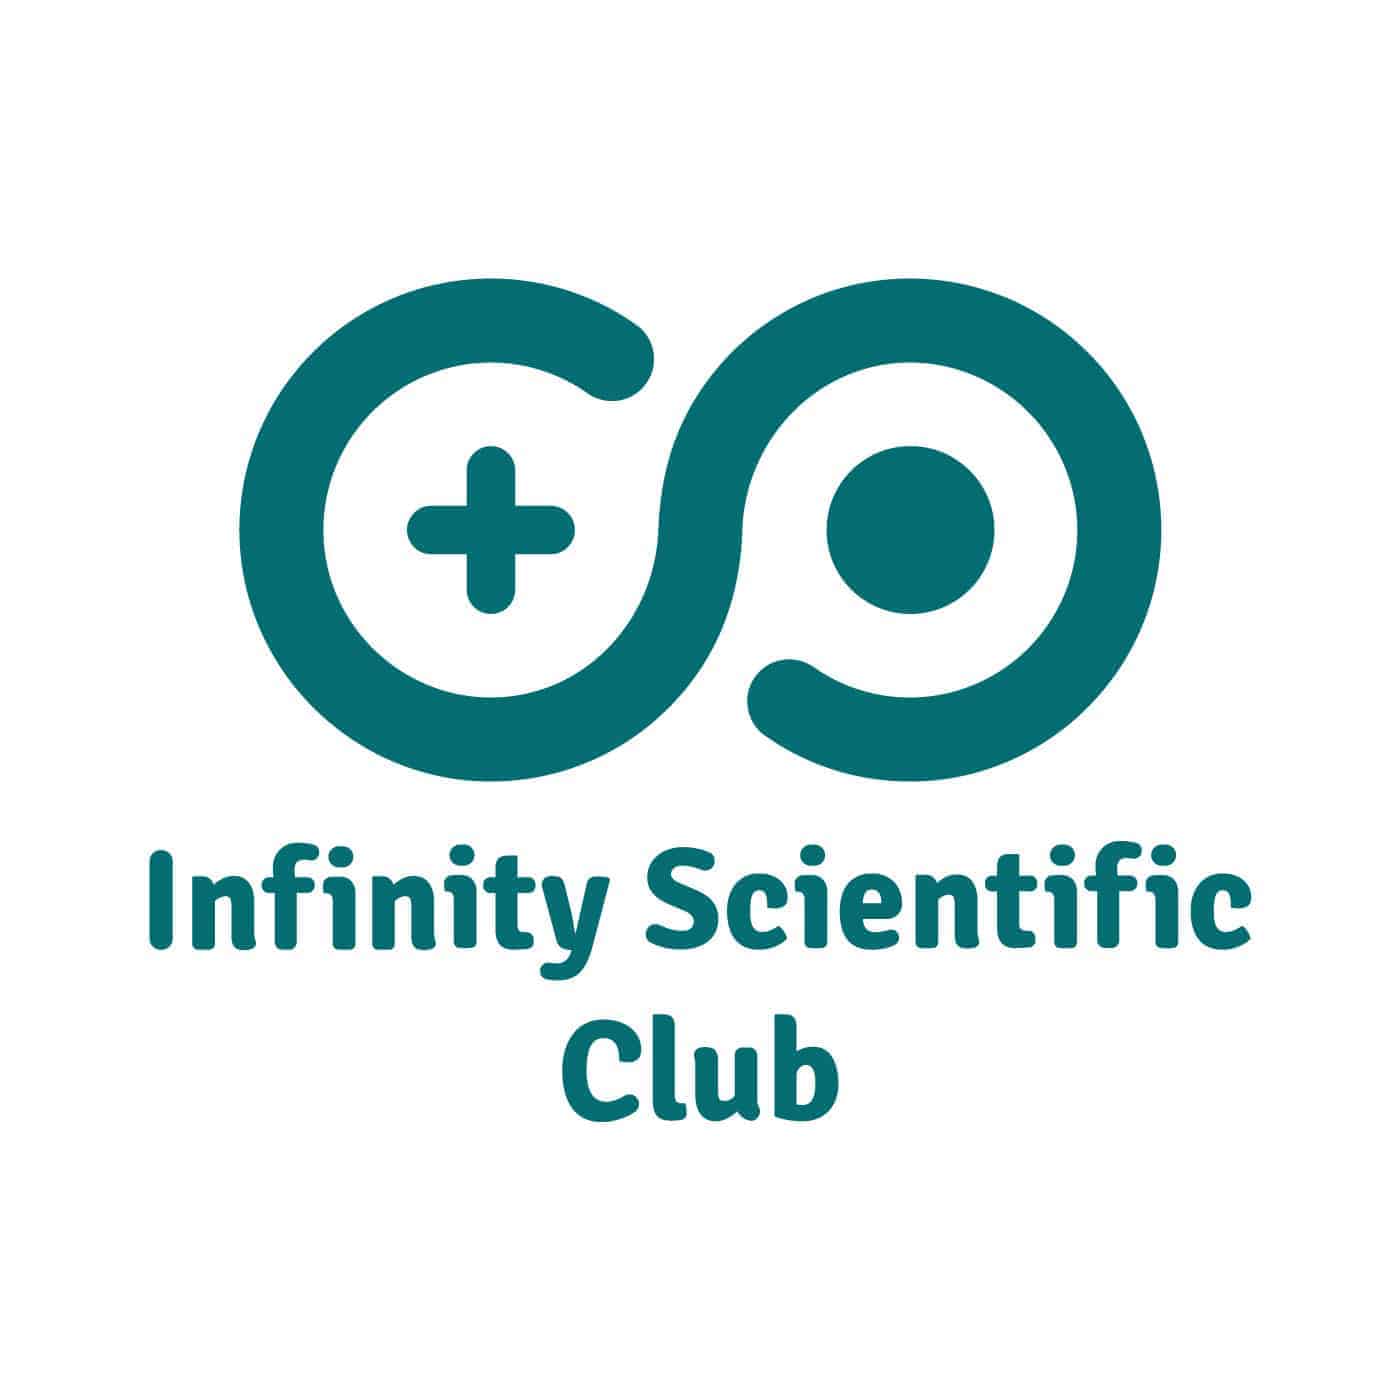 Infinity Scientific Club | Design Ideas